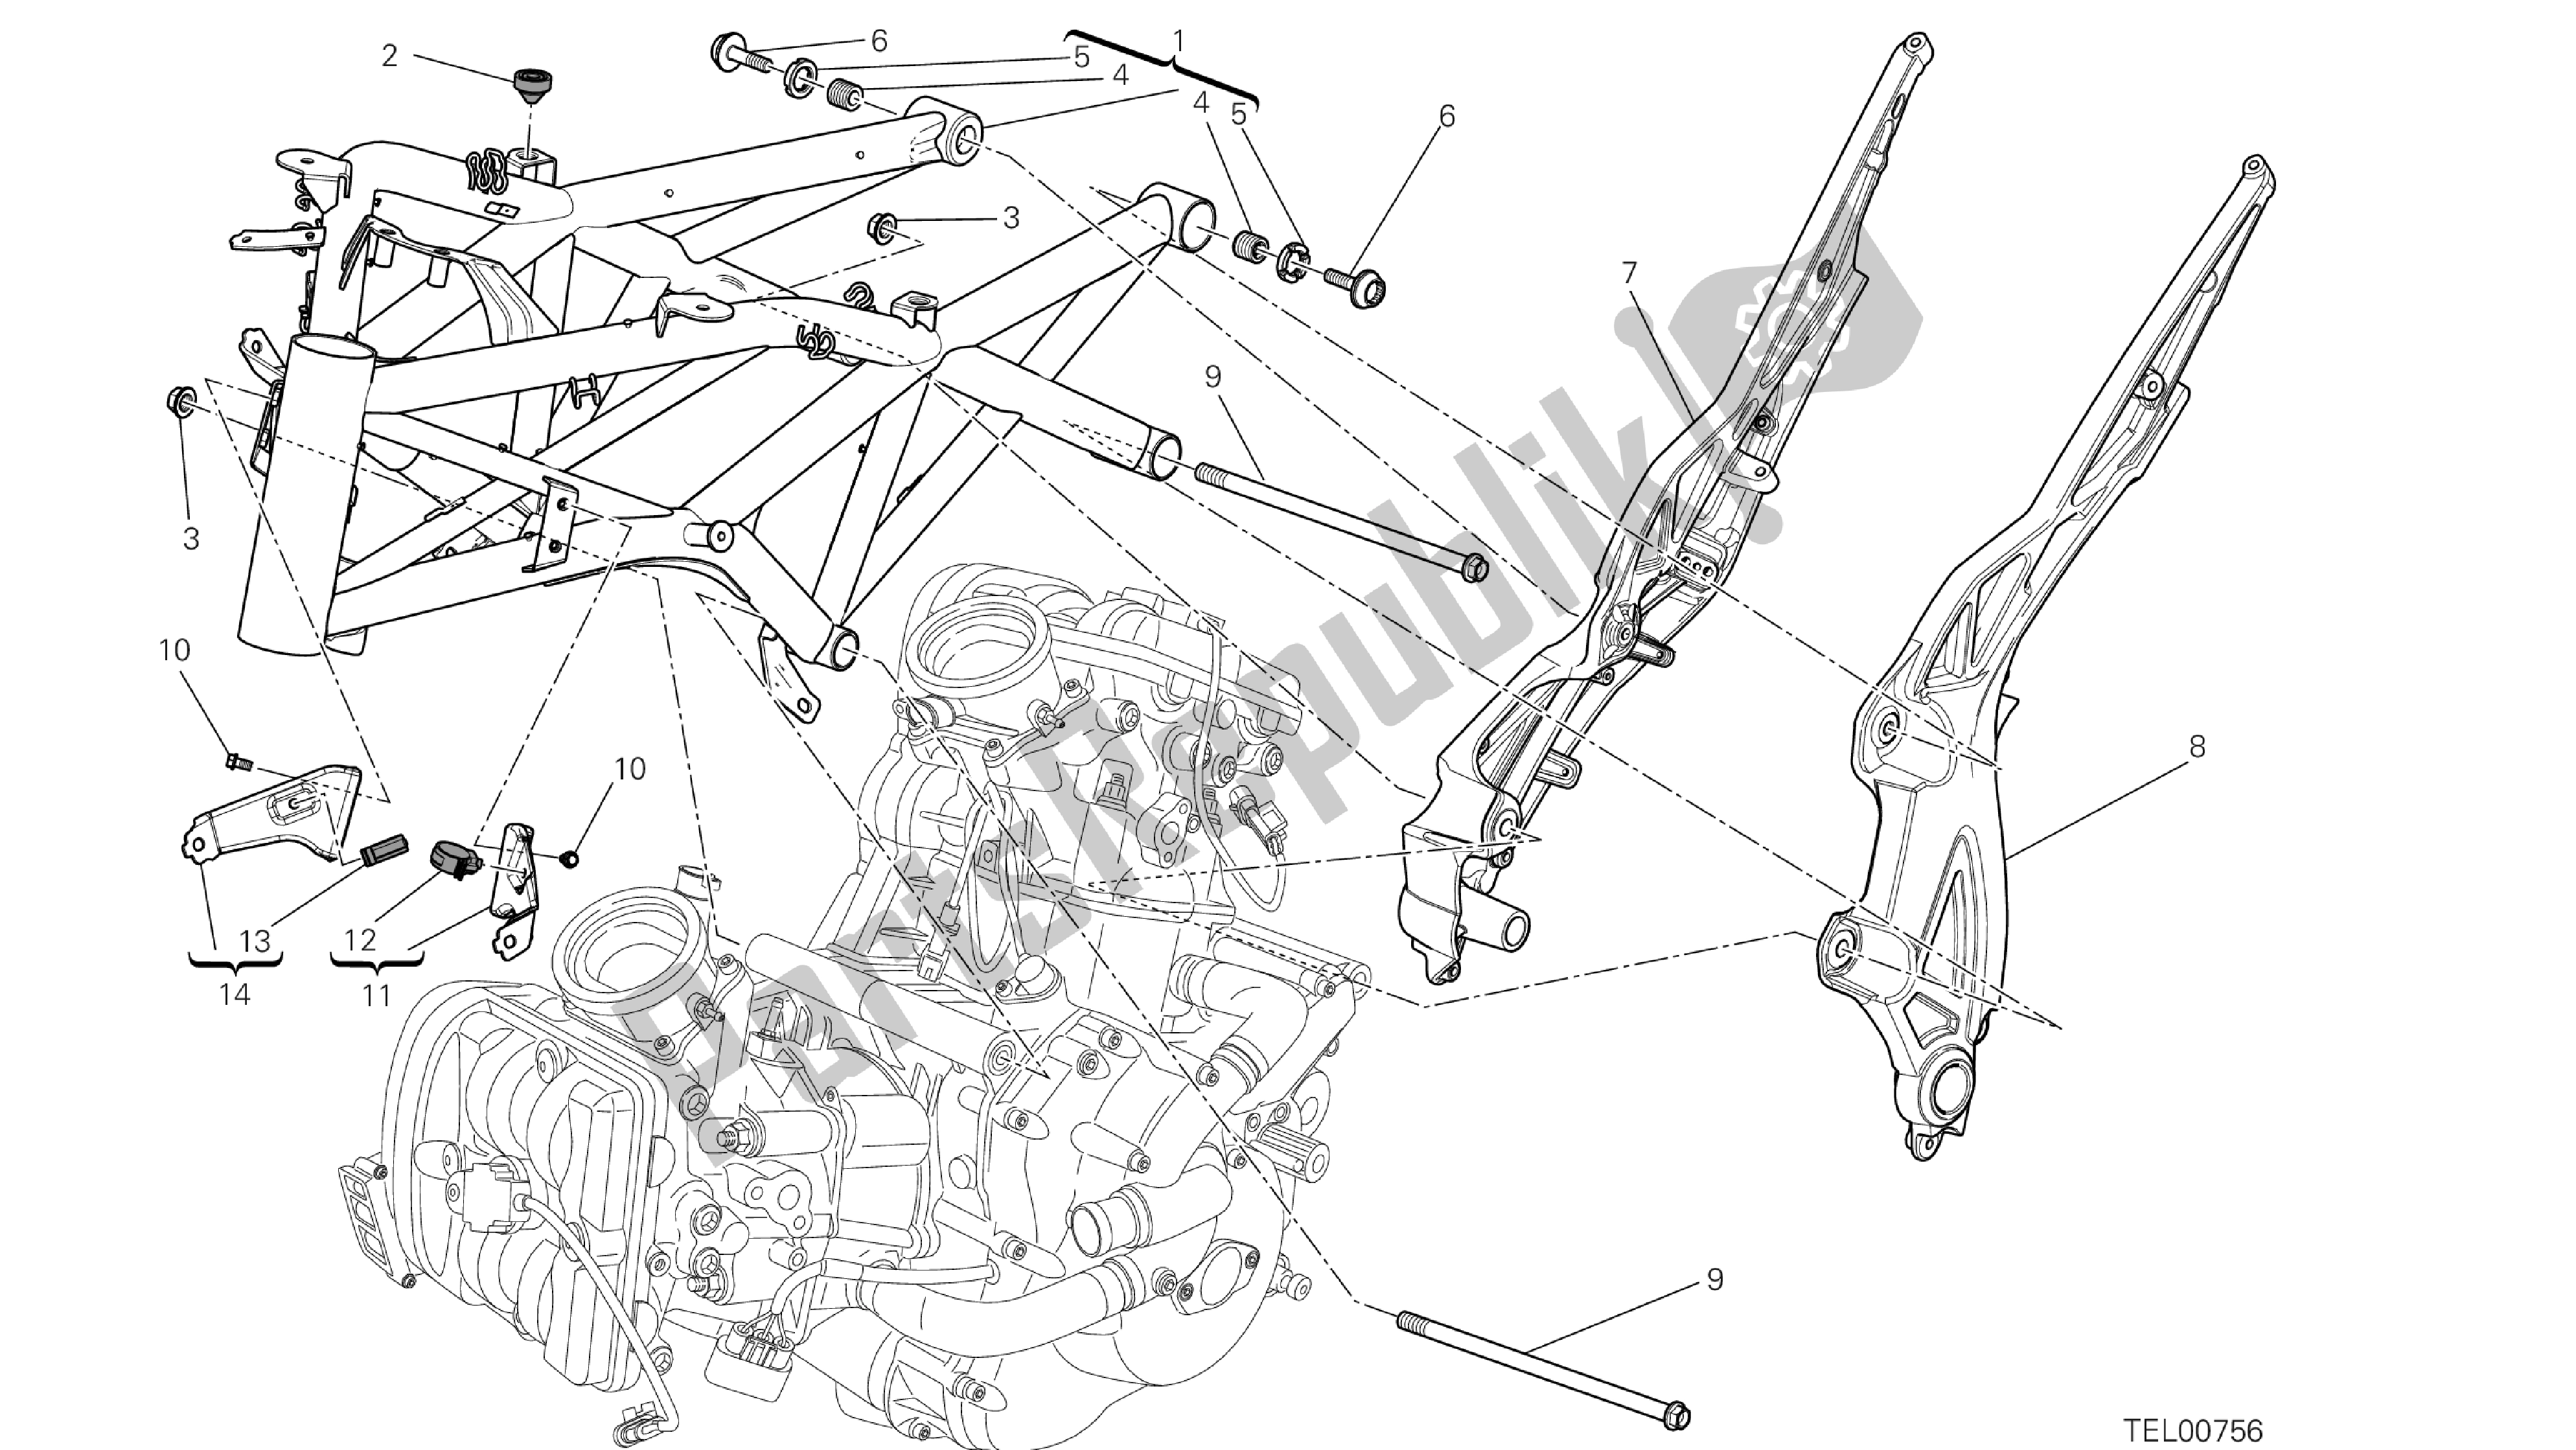 Alle onderdelen voor de Tekening 022 - Frame [mod: Dvlt; Xst: Aus, Eu R, Fr A, J Ap] Groep Fr Ame van de Ducati Diavel Strada 1200 2013